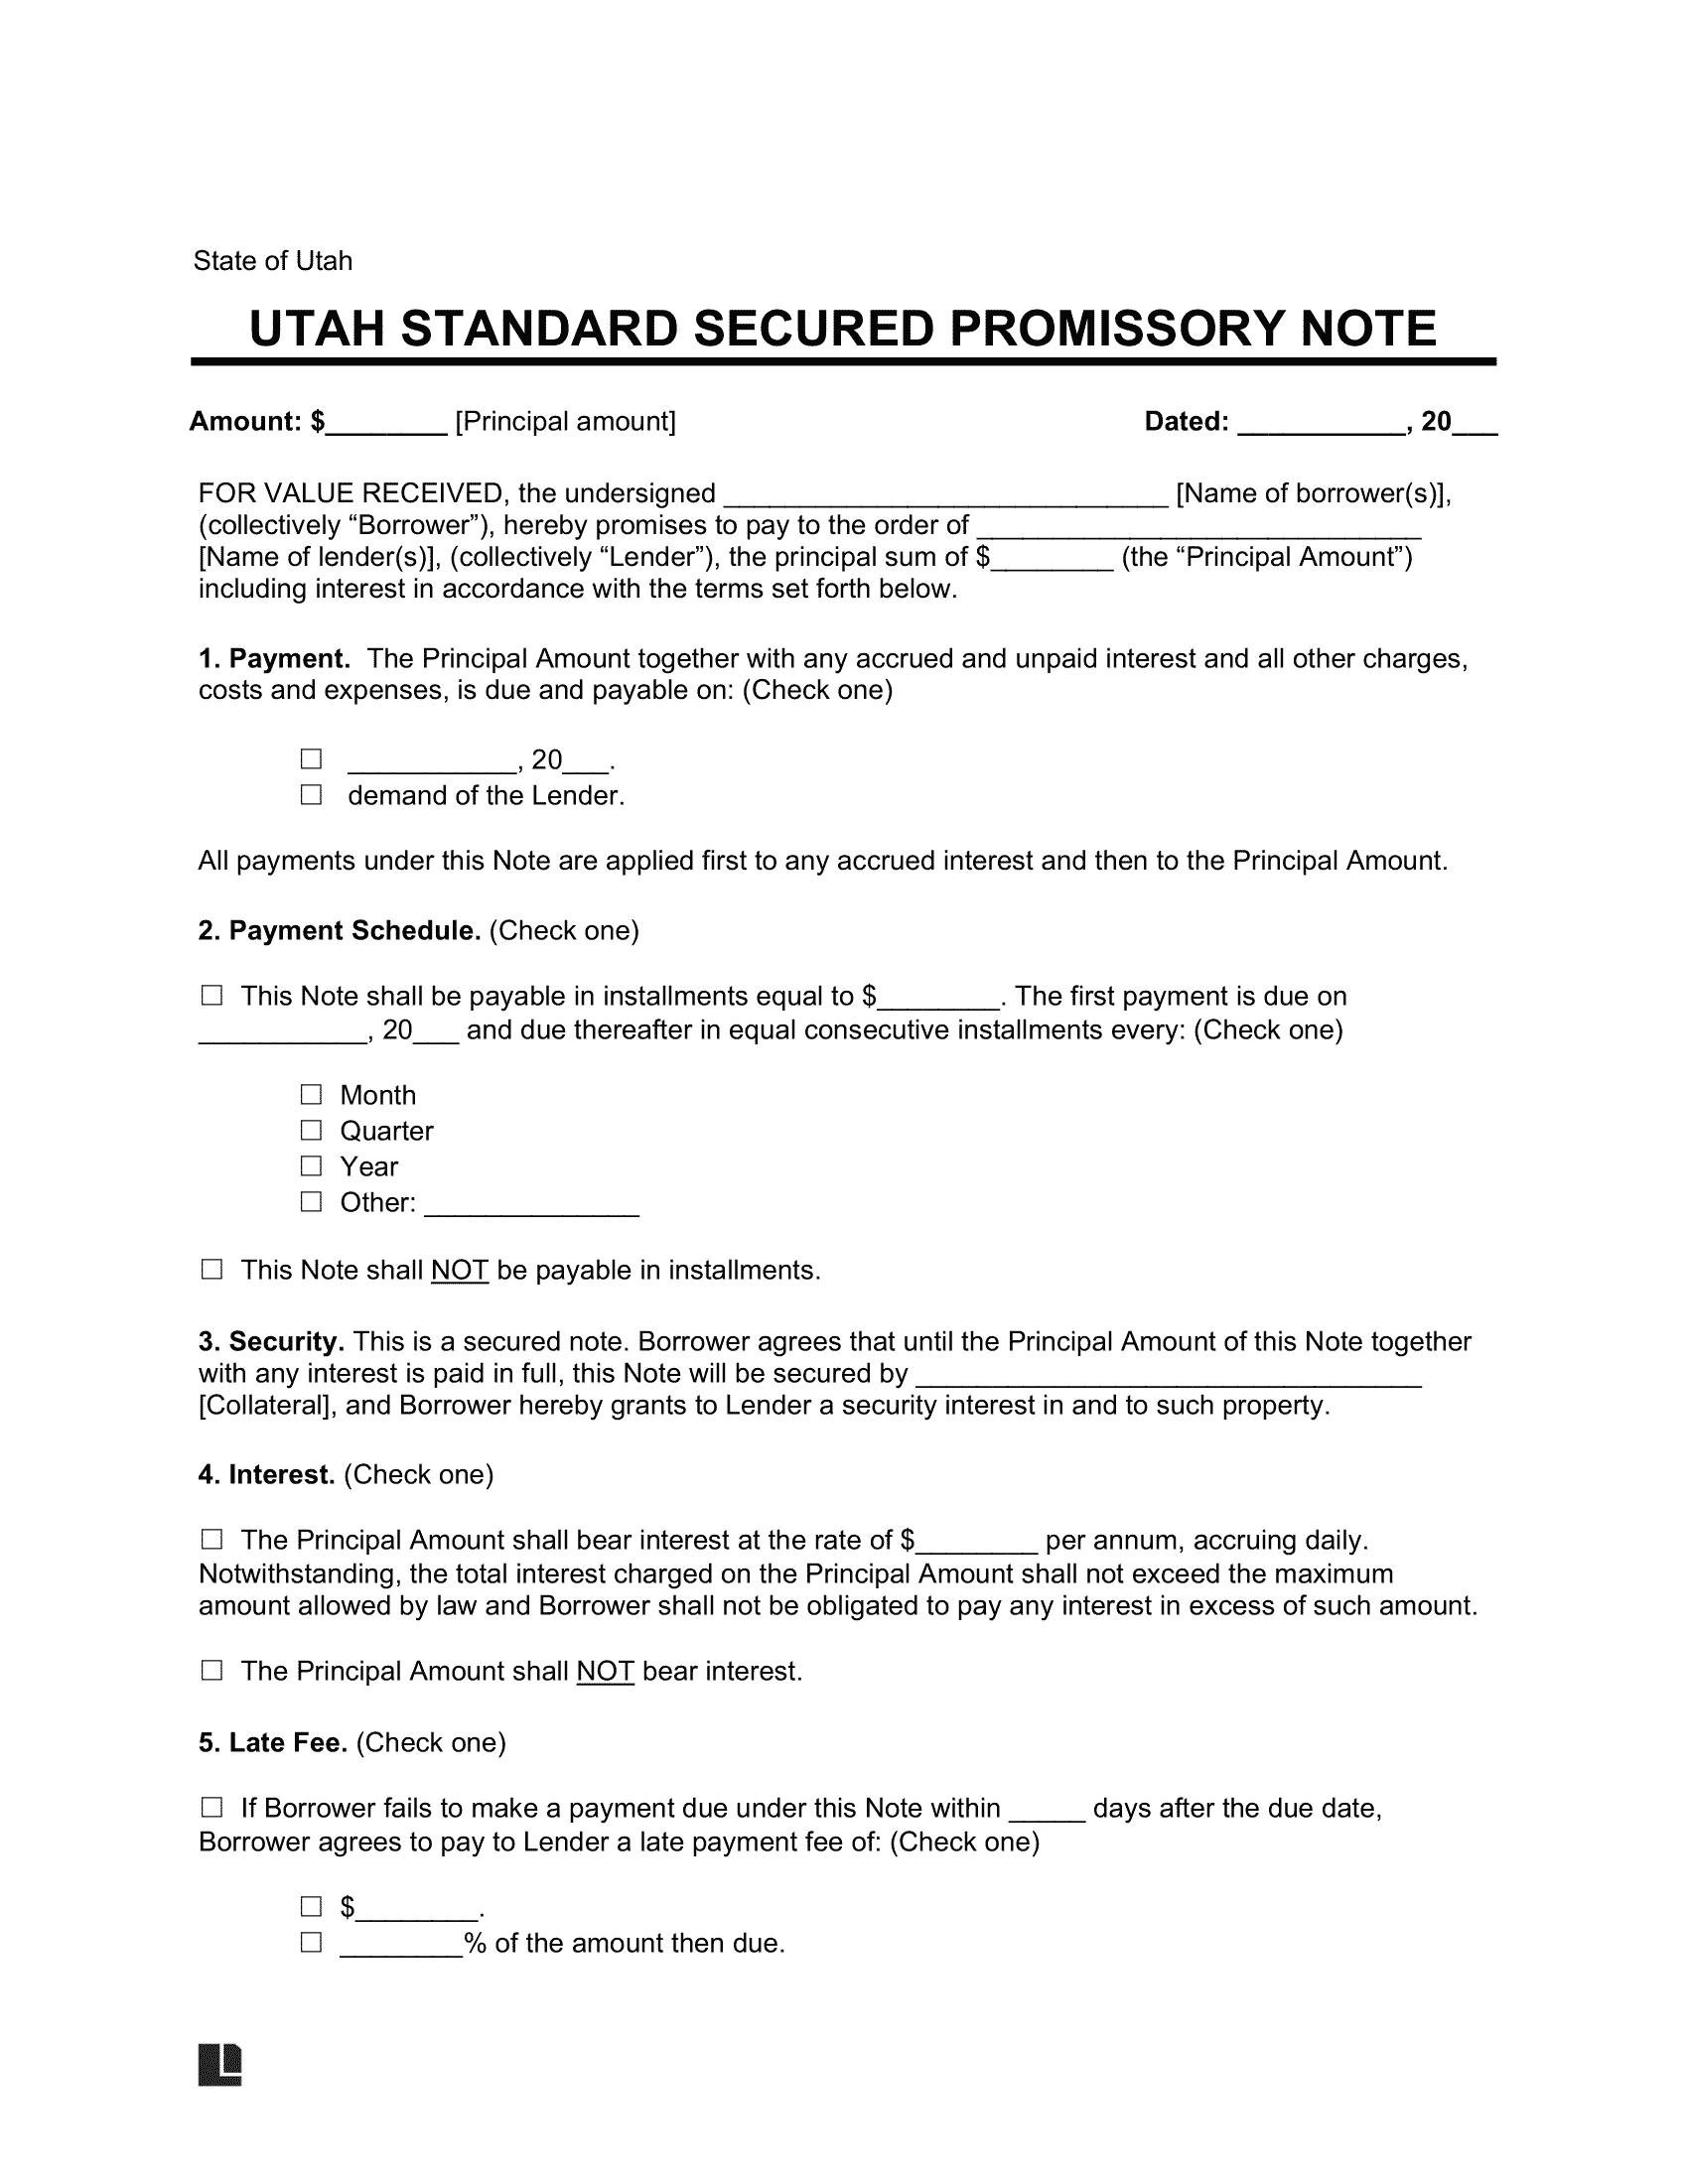 Utah Standard Secured Promissory Note Template